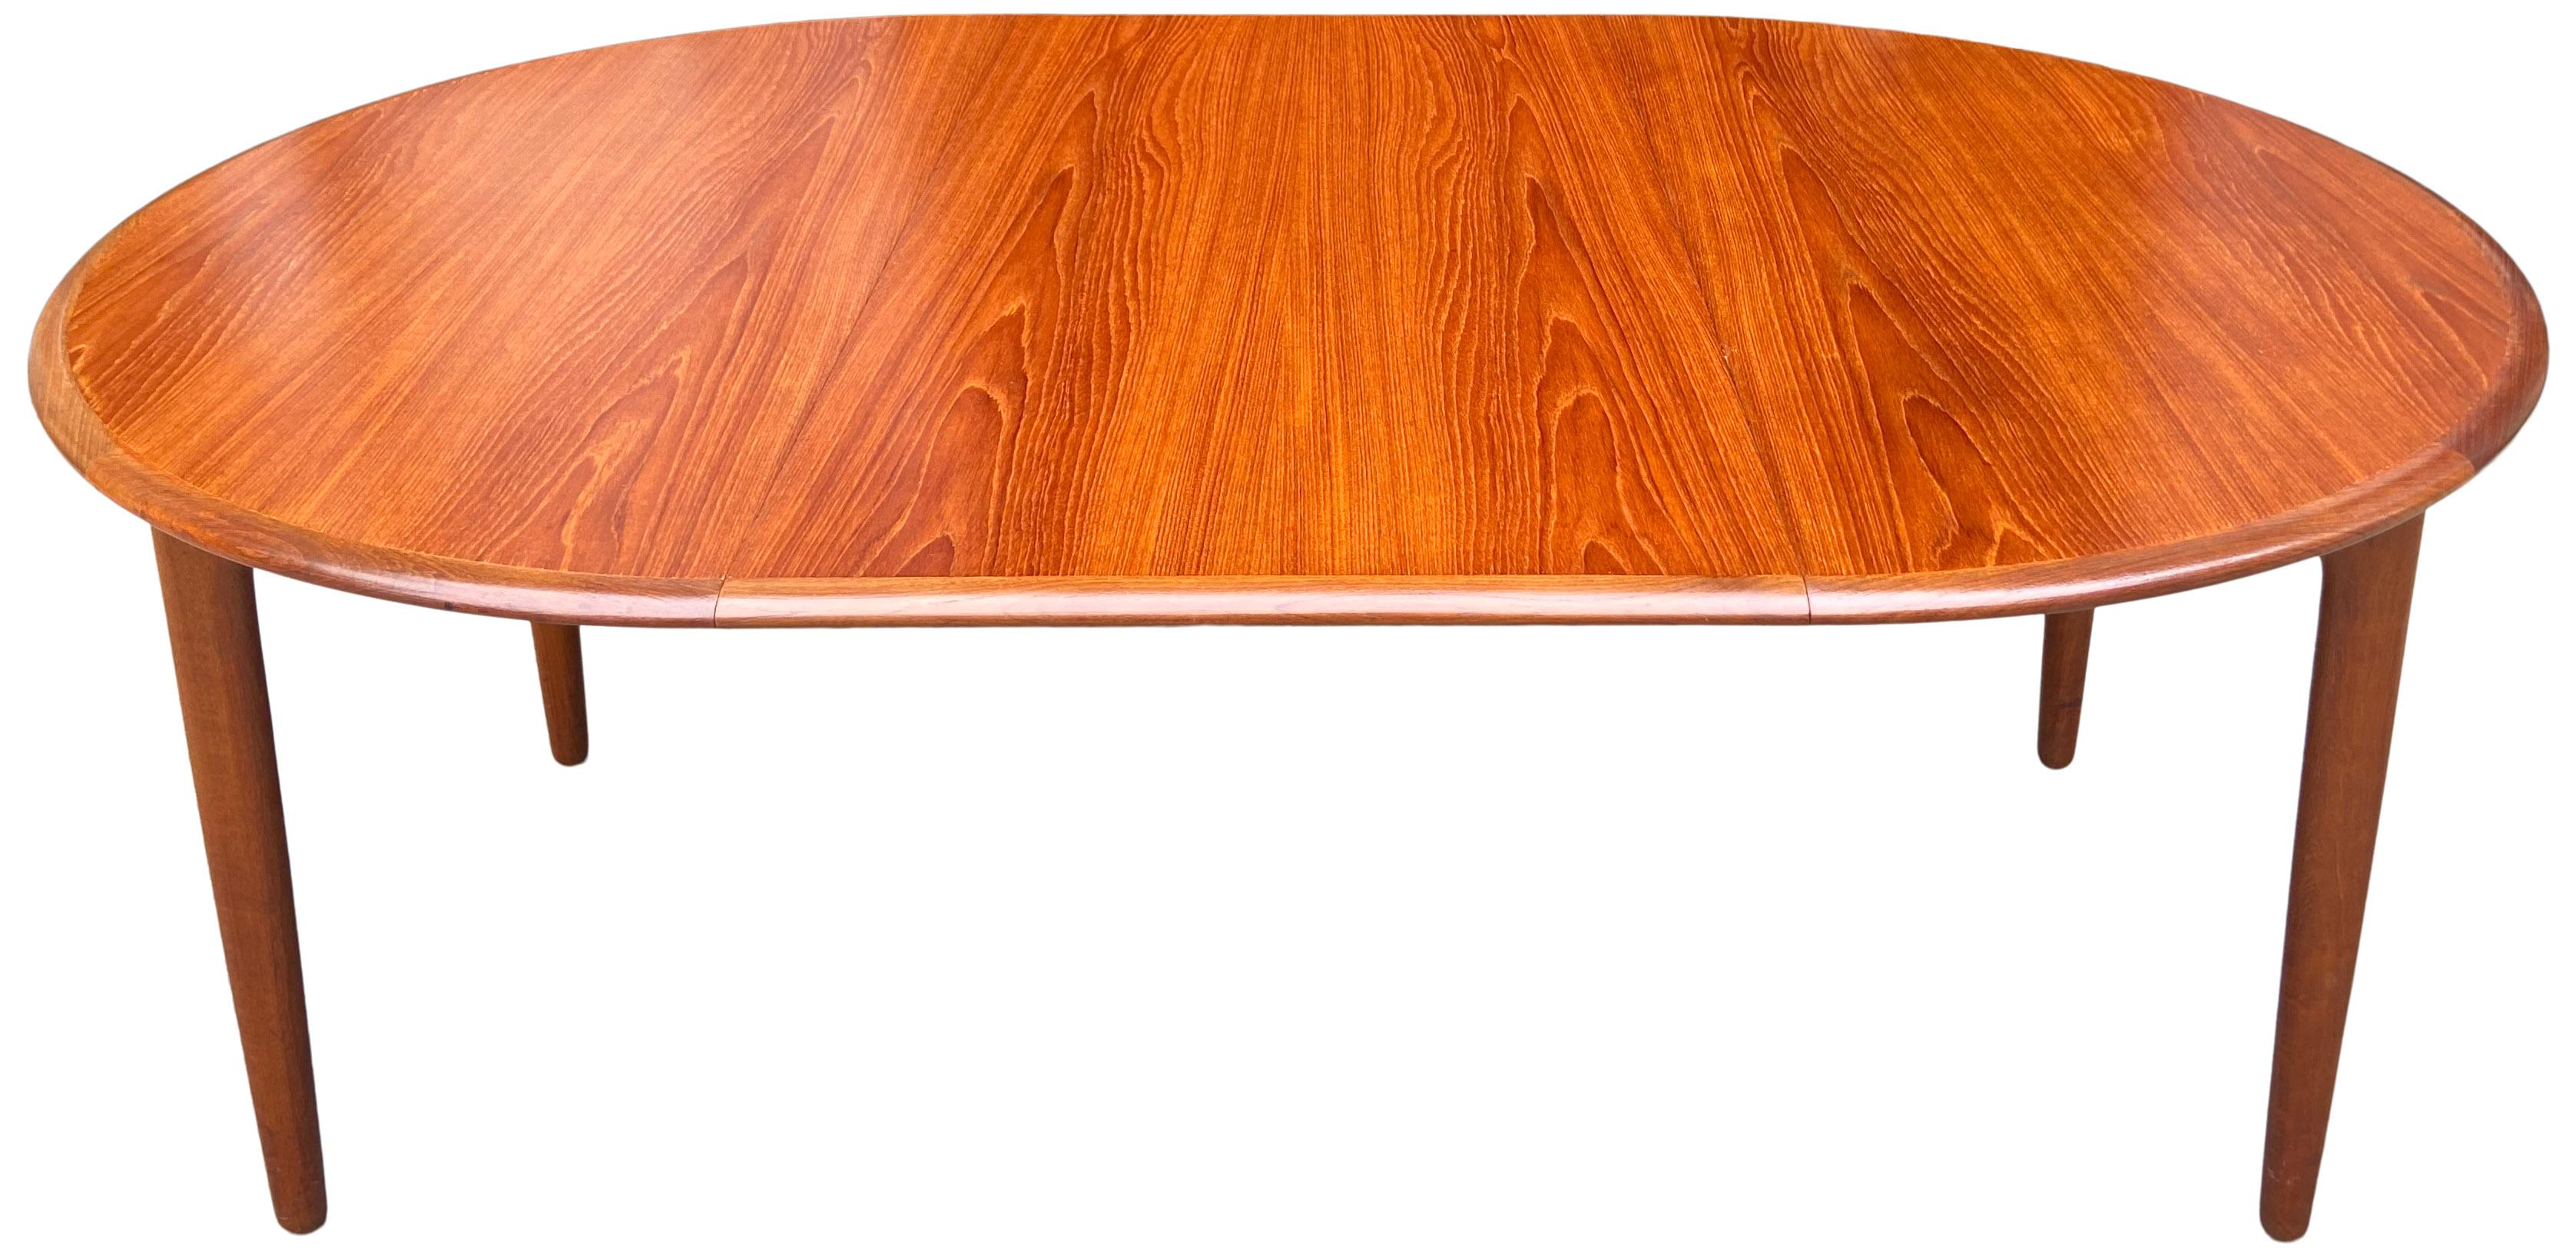 Mid-Century Modern Midcentury Elliptical Oval Teak Expandable Dining Table '2' Leaves